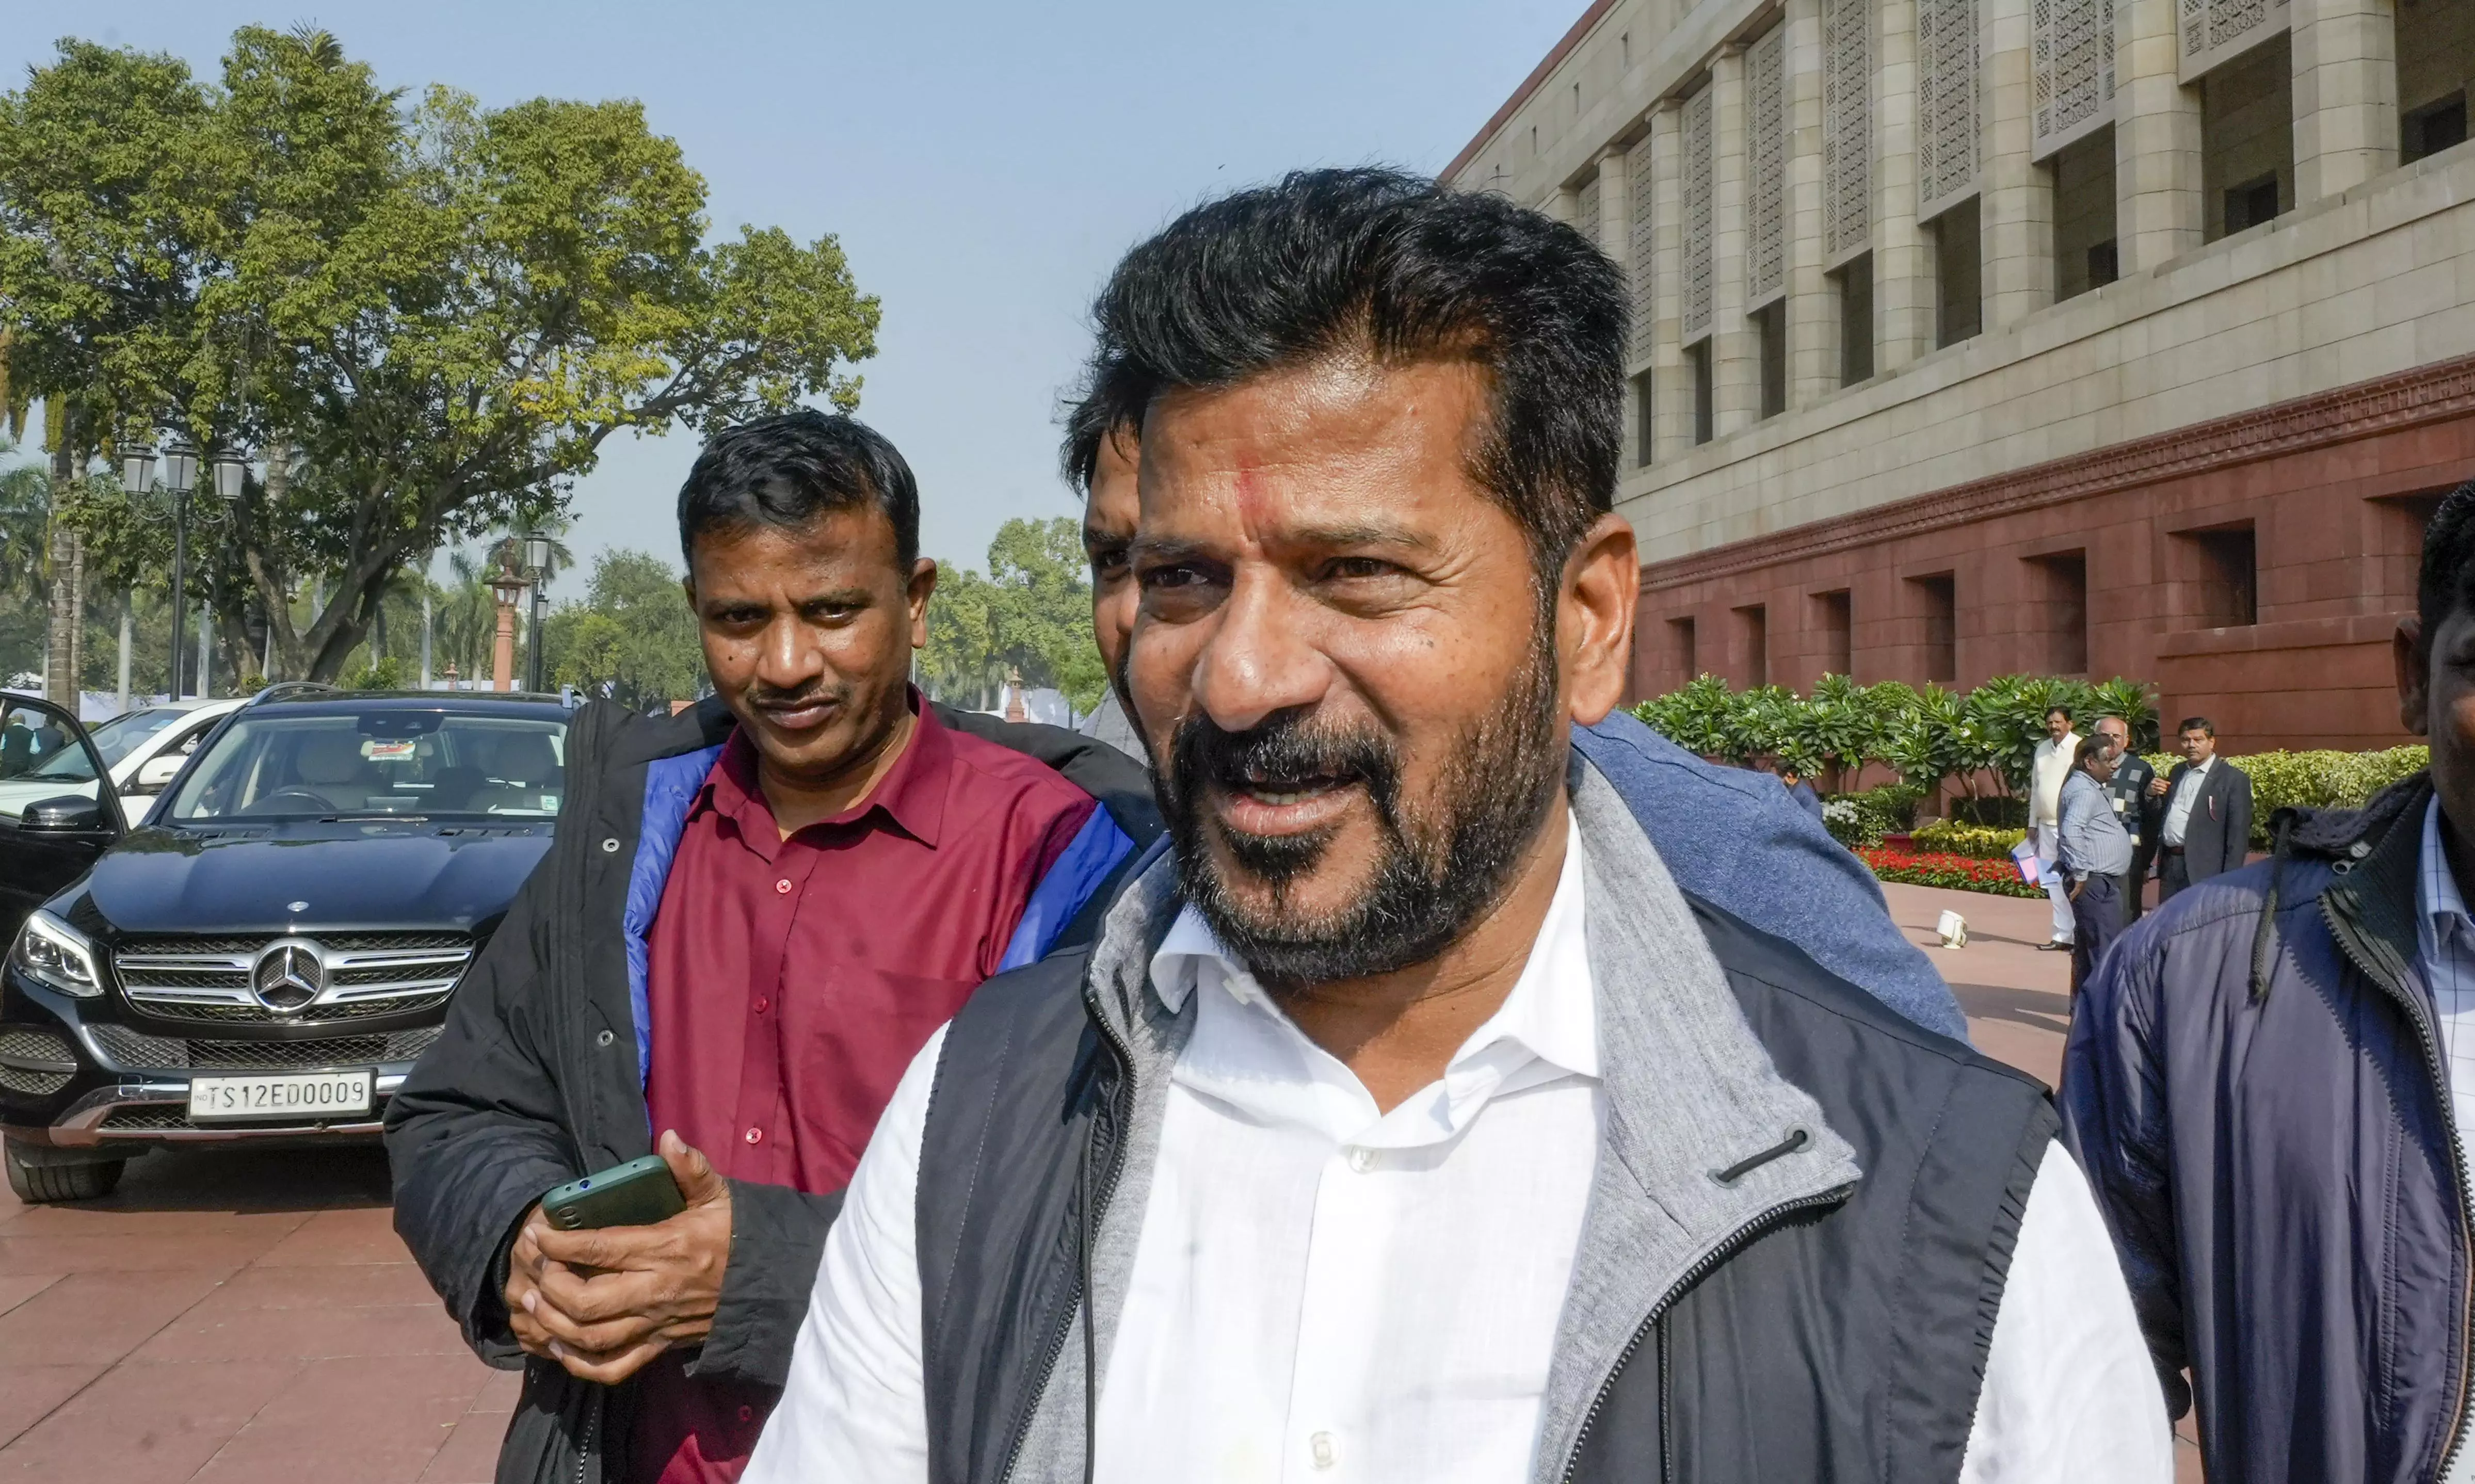 Union minister slams Revanth Reddy over ‘Bihar DNA’ remark